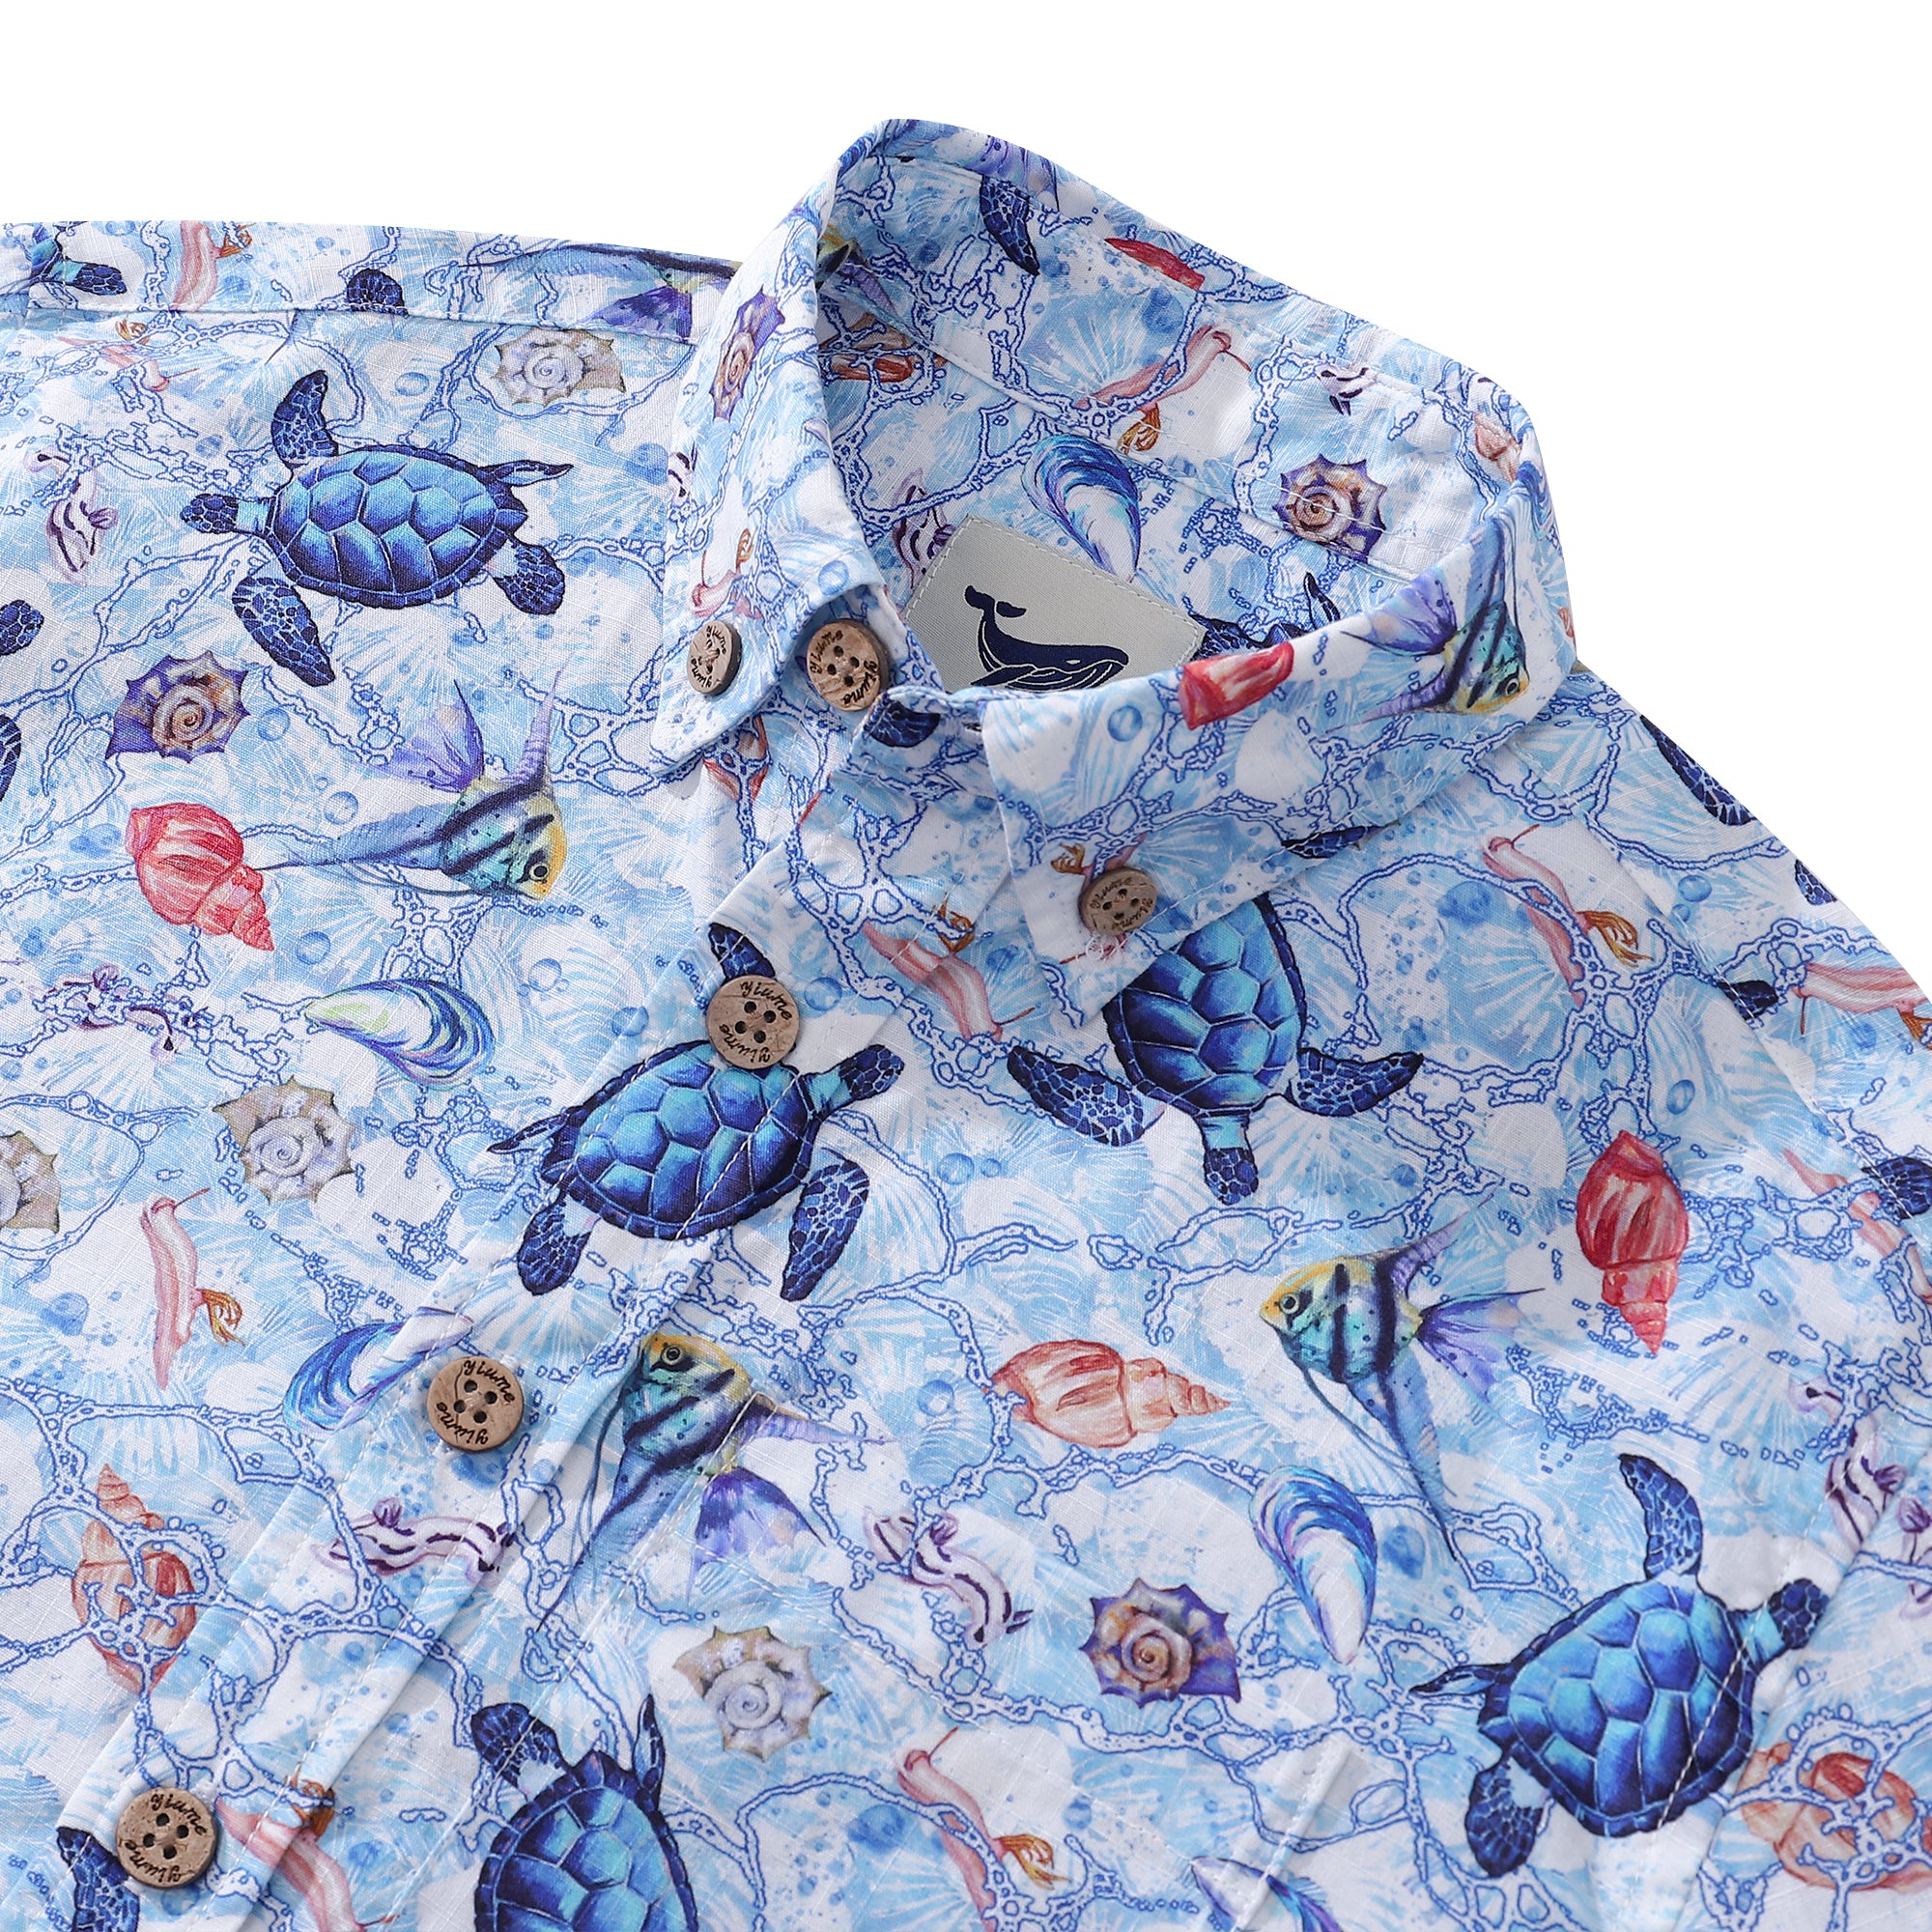 Camicia hawaiana per bambini con stampa tartarughe vaganti in cotone, manica corta abbottonata